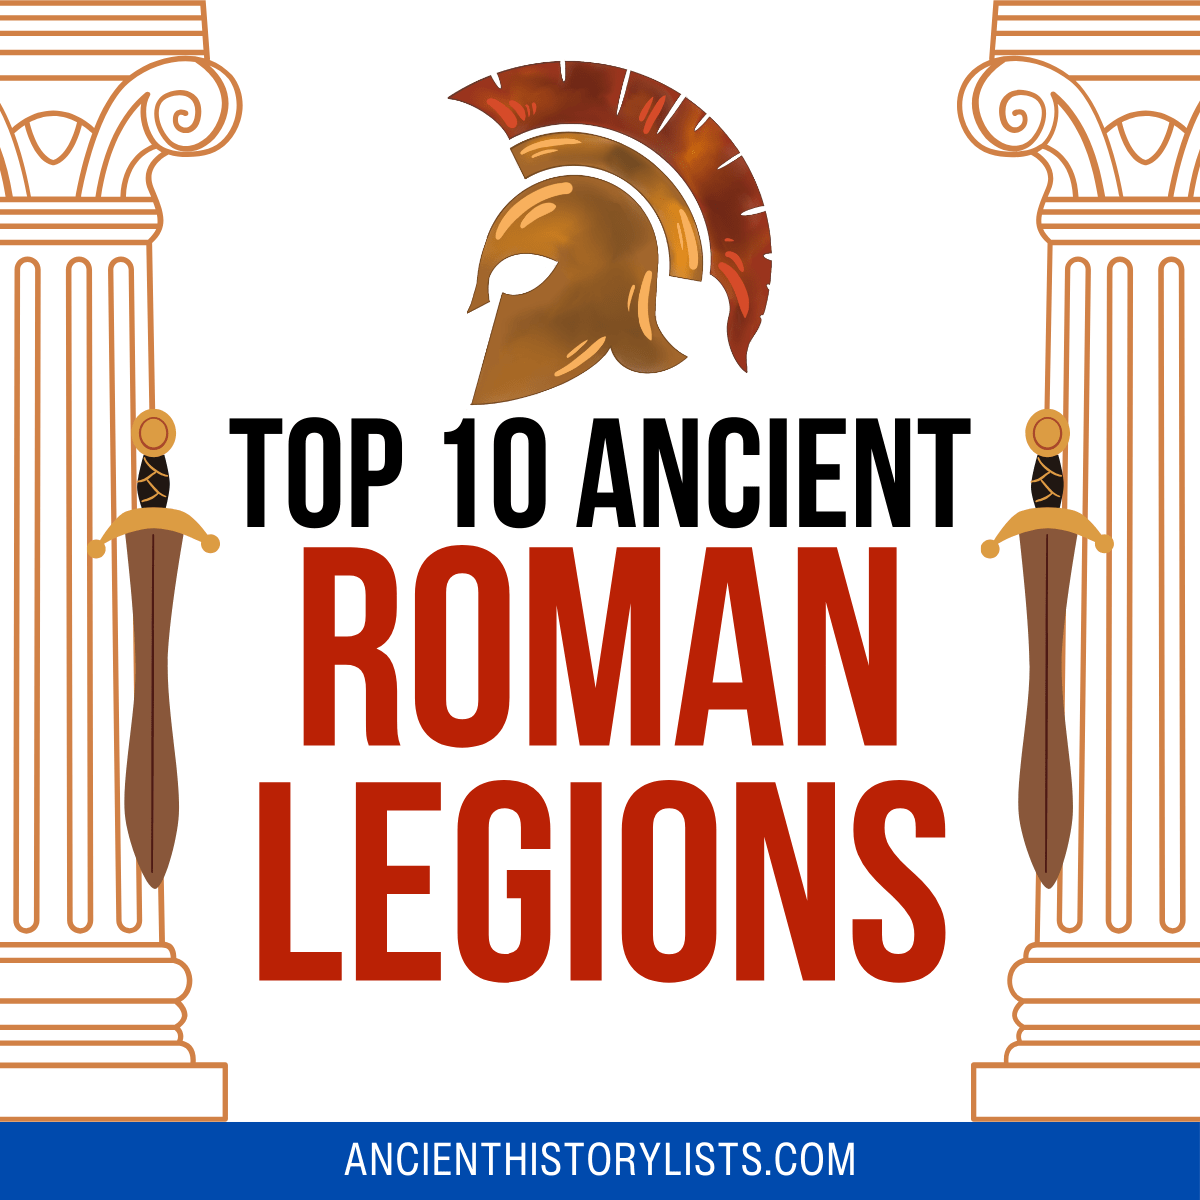 Top 10 Ancient Roman Legions